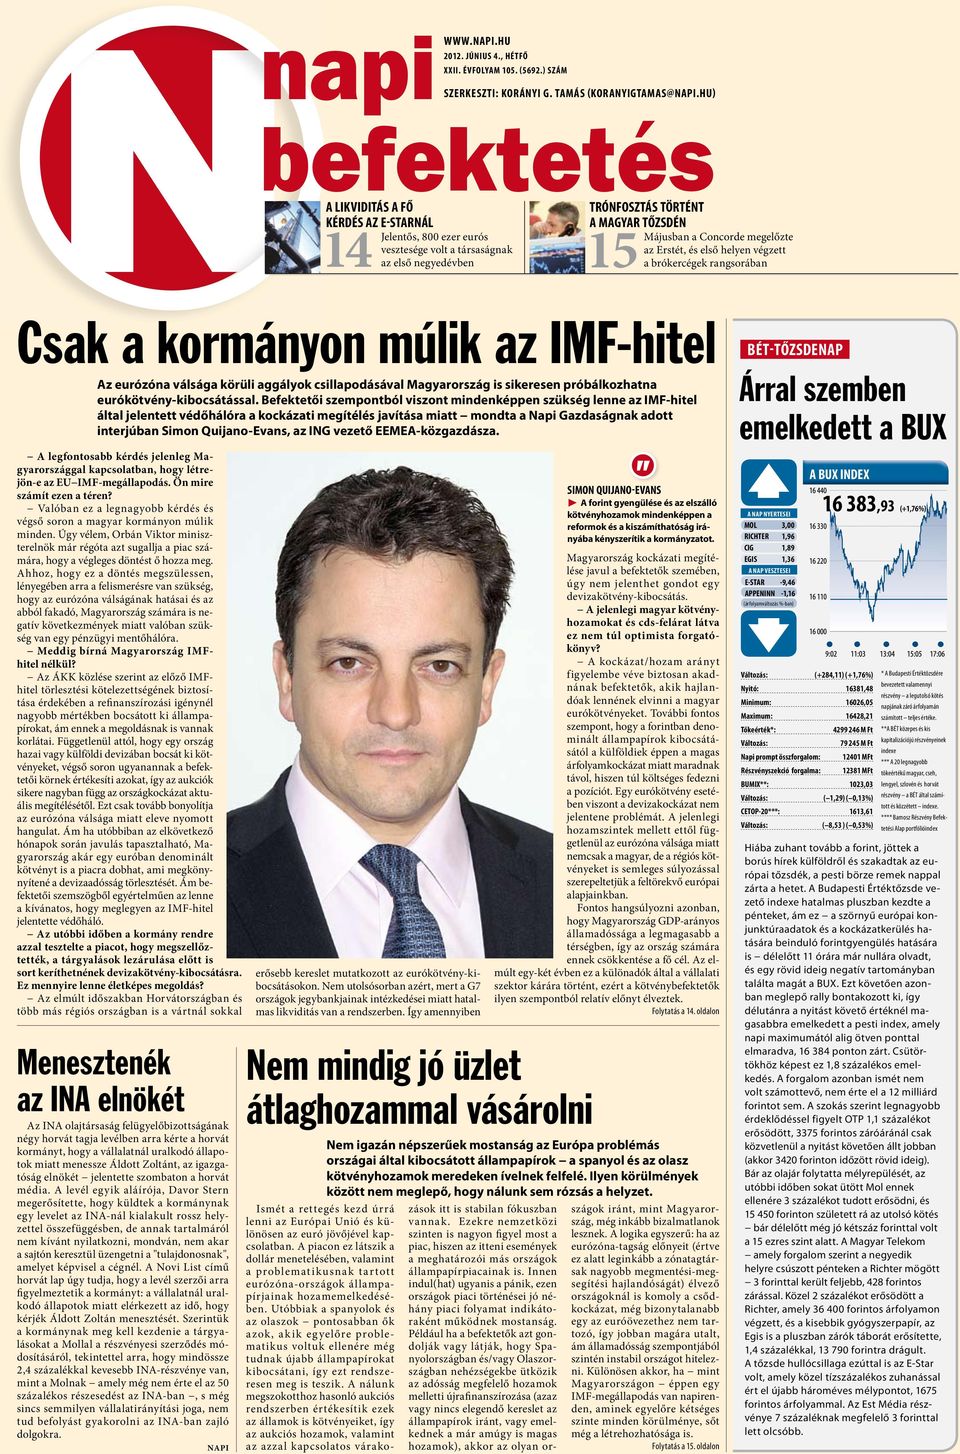 Erstét, és első helyen végzett a brókercégek rangsorában Csak a kormányon múlik az IMF-hitel Az eurózóna válsága körüli aggályok csillapodásával Magyarország is sikeresen próbálkozhatna